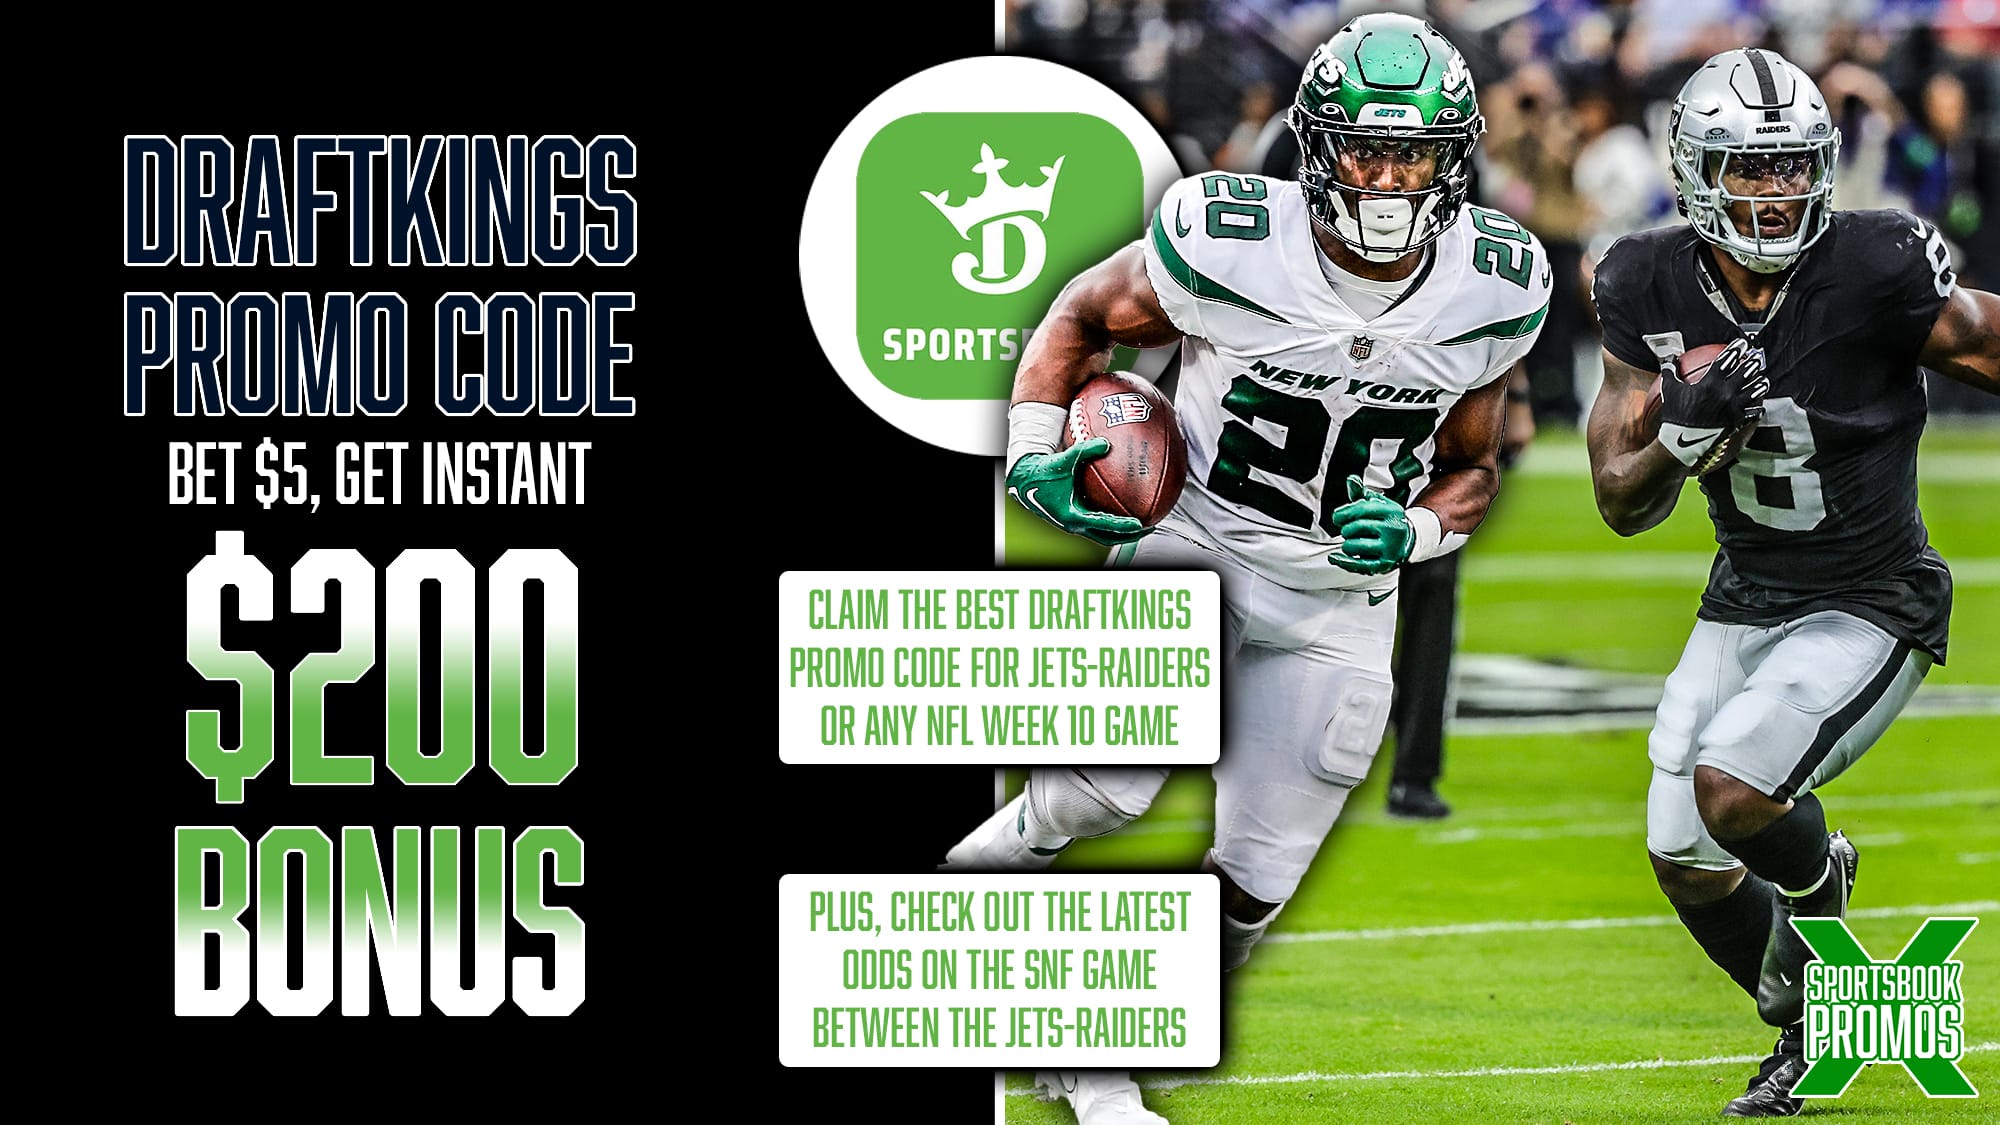 DraftKings Promo Code, Get $200 Sportsbook Bonus, NFL Week 10, Jets-Raiders